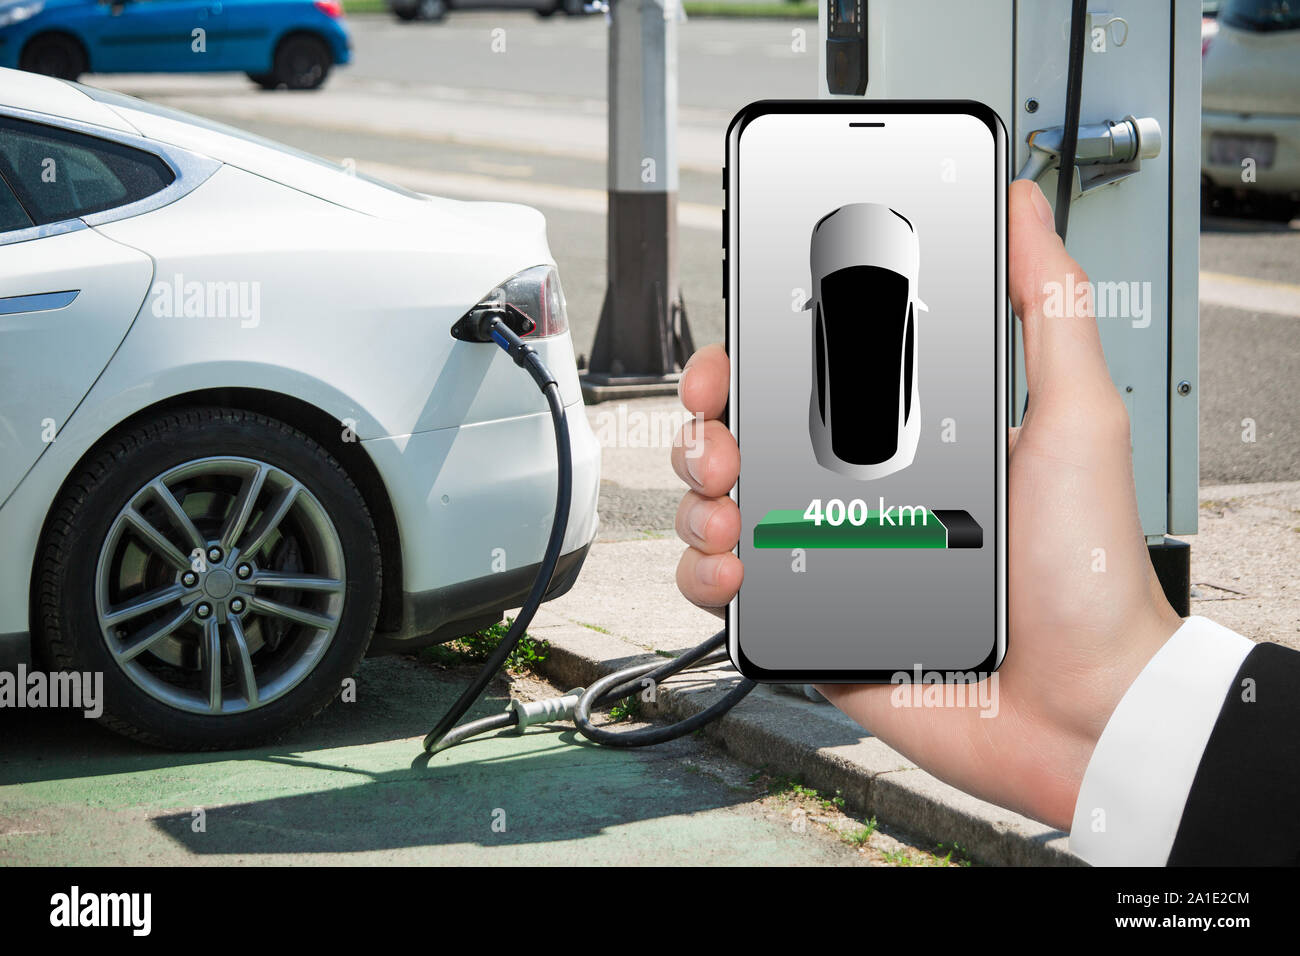 La main avec téléphone sur un fond de voiture électrique point de recharge. Sur un écran de l'appareil indicateur de réserve de marche. Banque D'Images